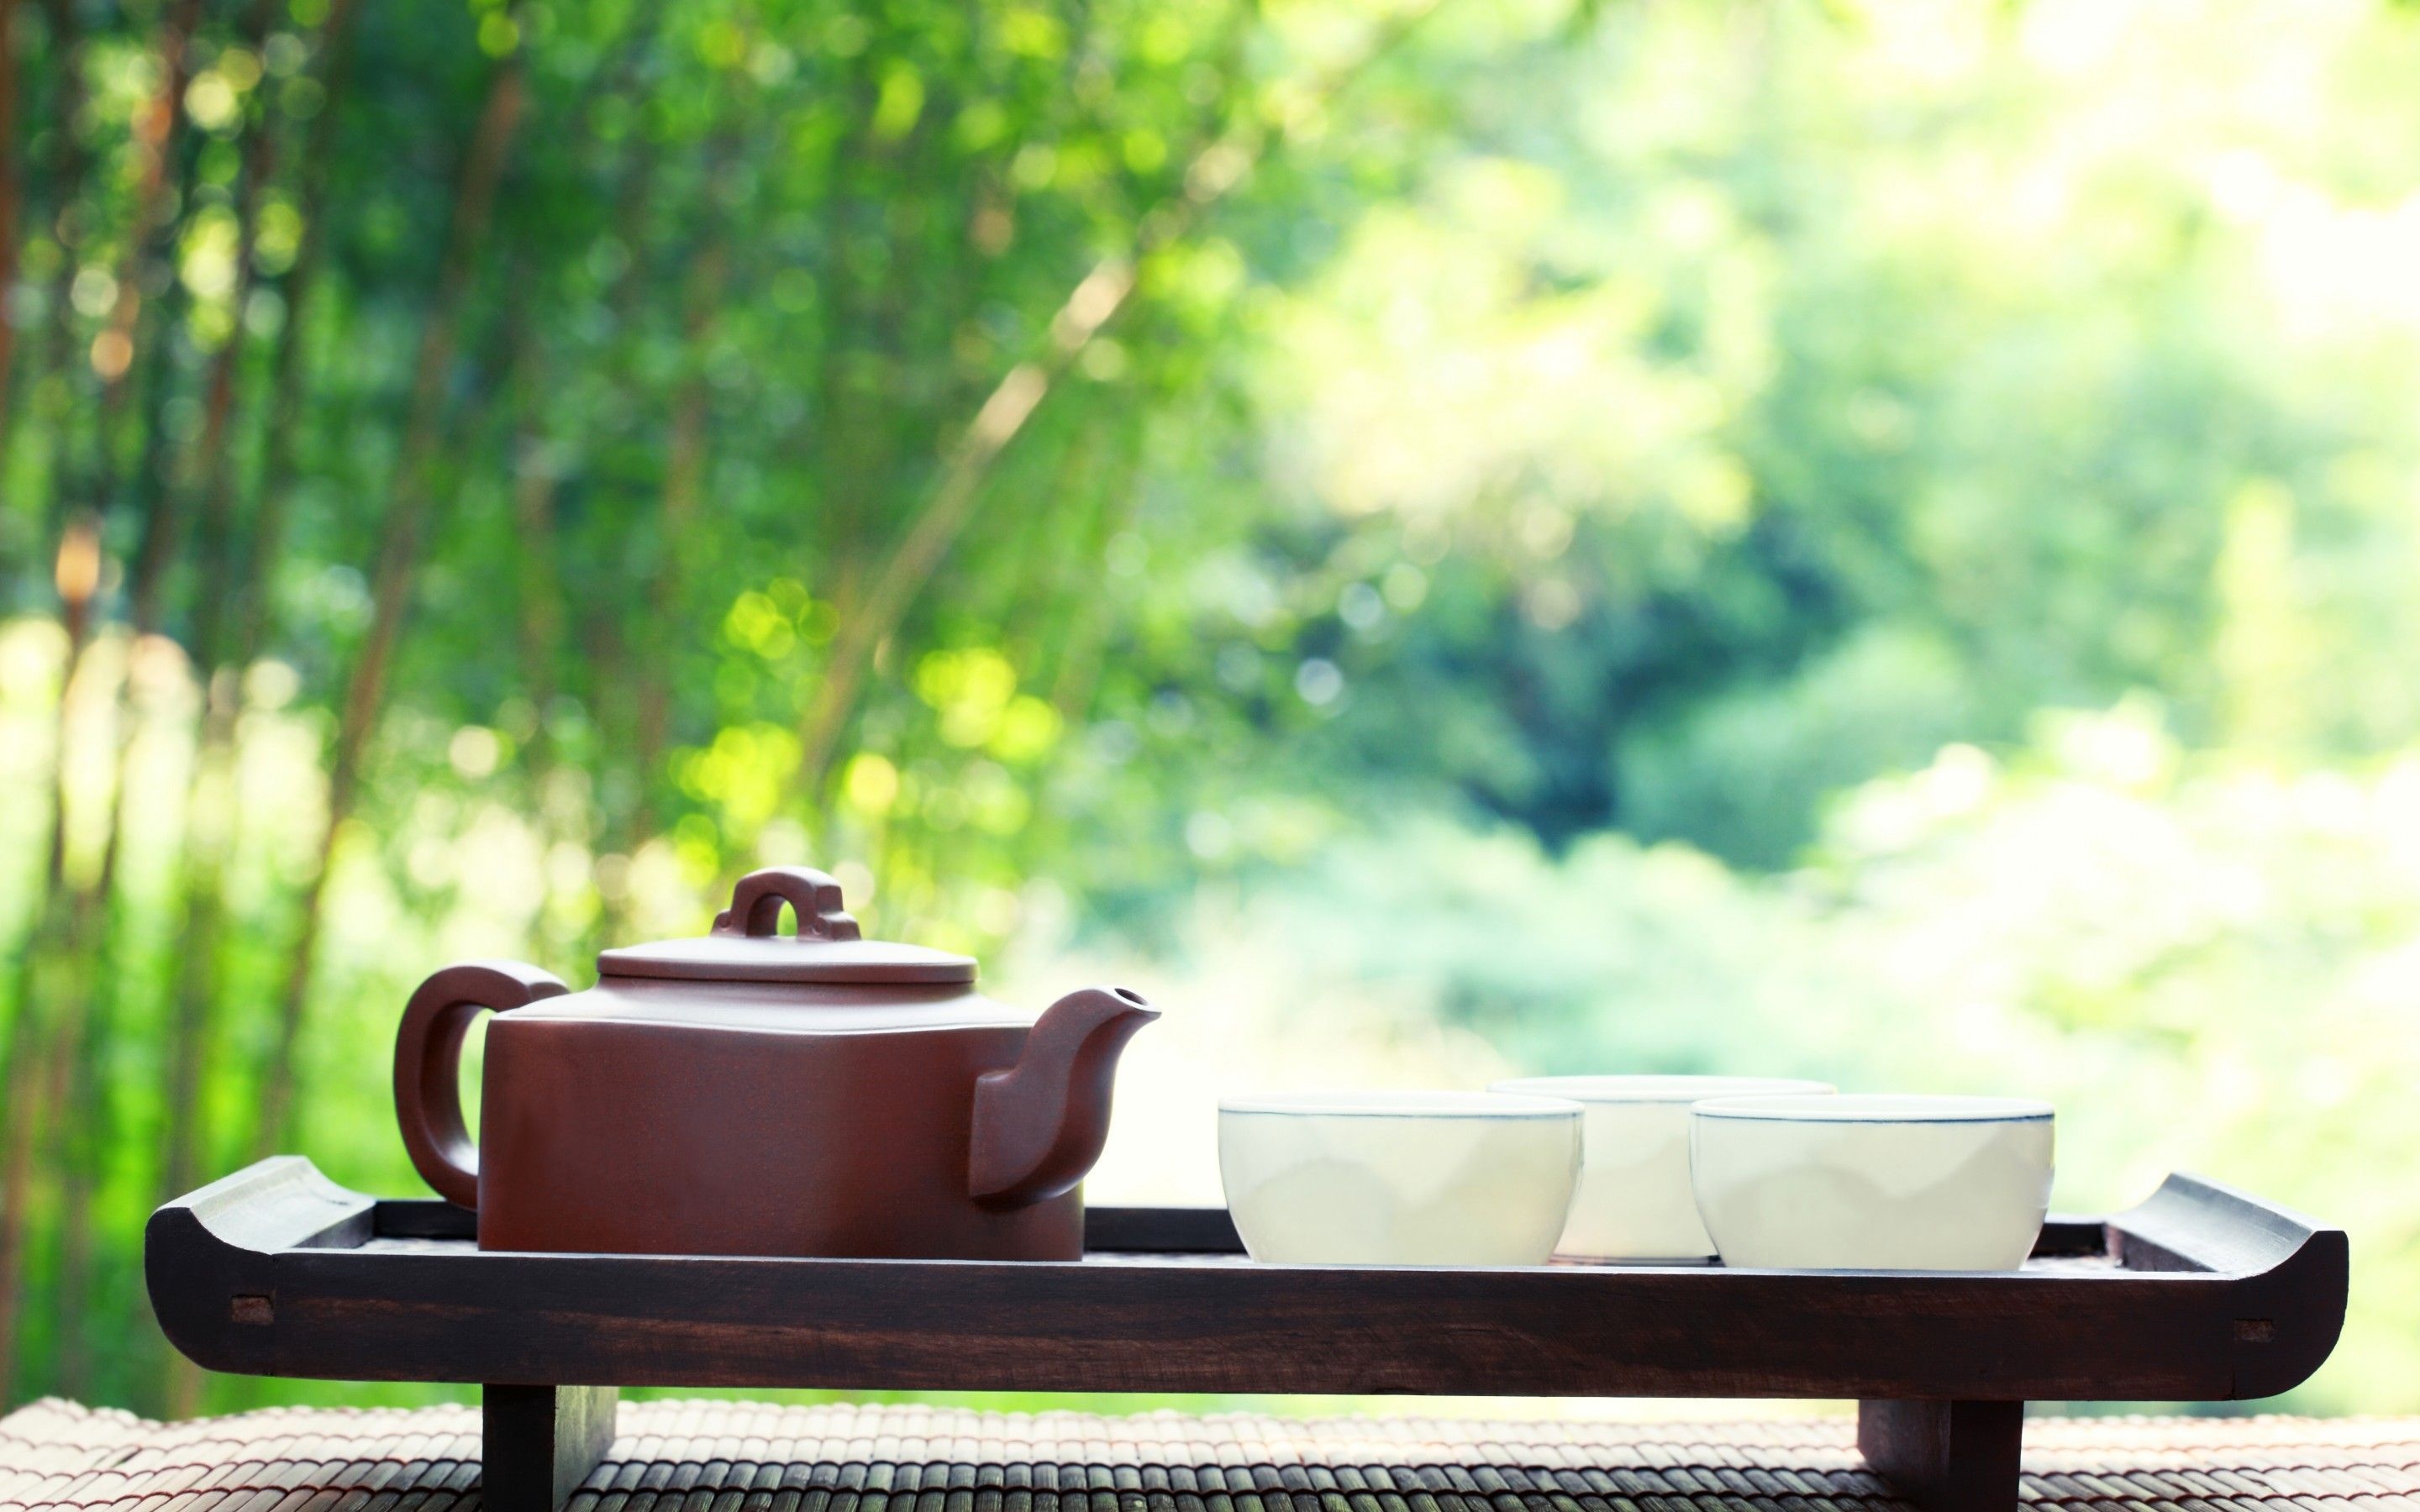 Japanese tea wallpapers, Traditional tea ceremony, Zen aesthetic, Minimalistic design, 2880x1800 HD Desktop